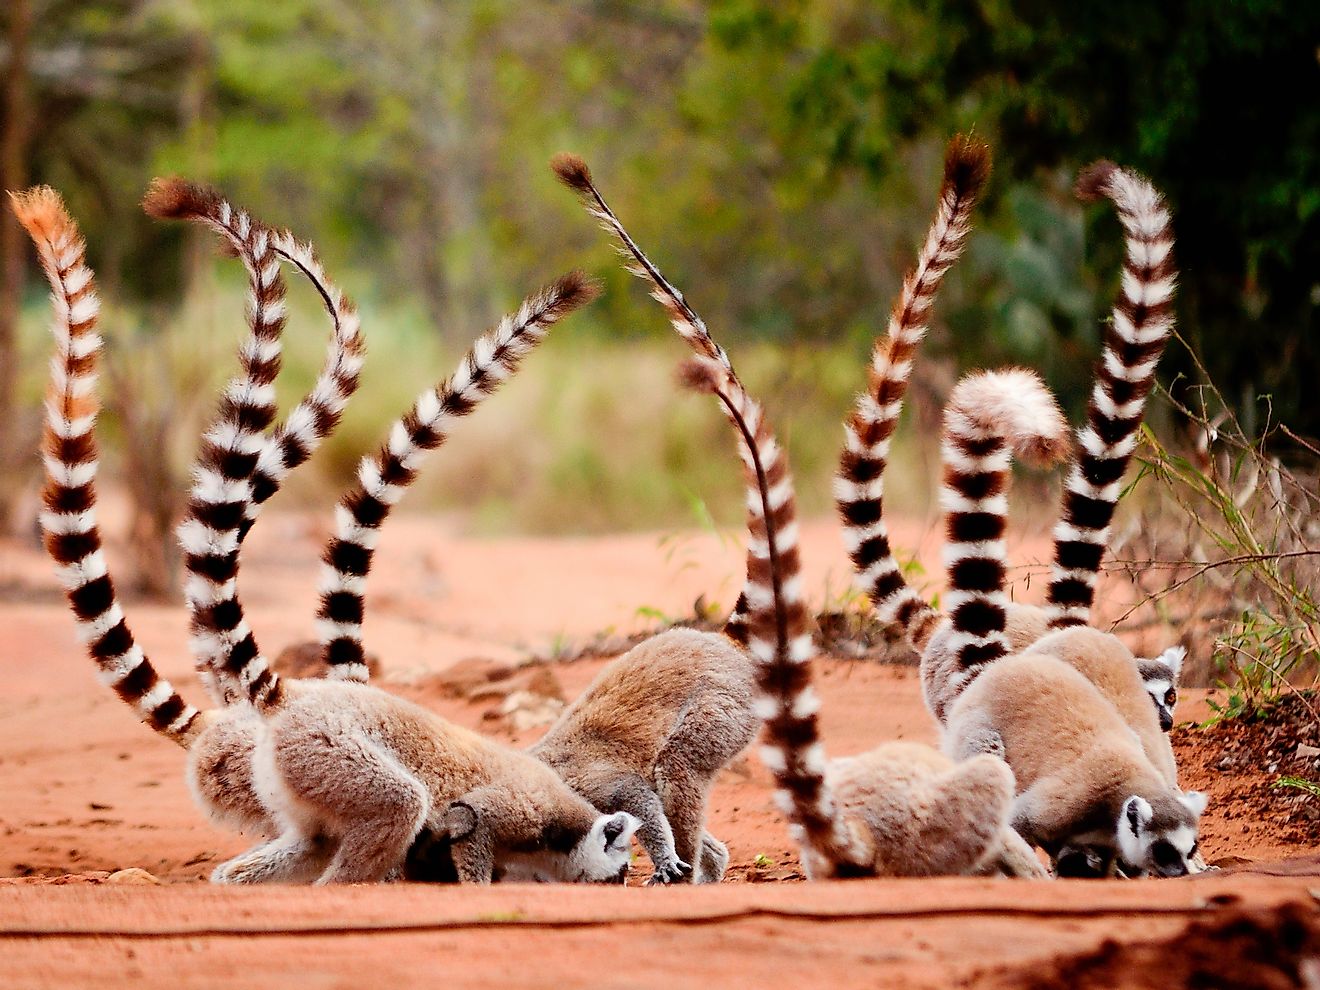 Ringtailed lemur eating soil in Berenty Reserve, Madagascar